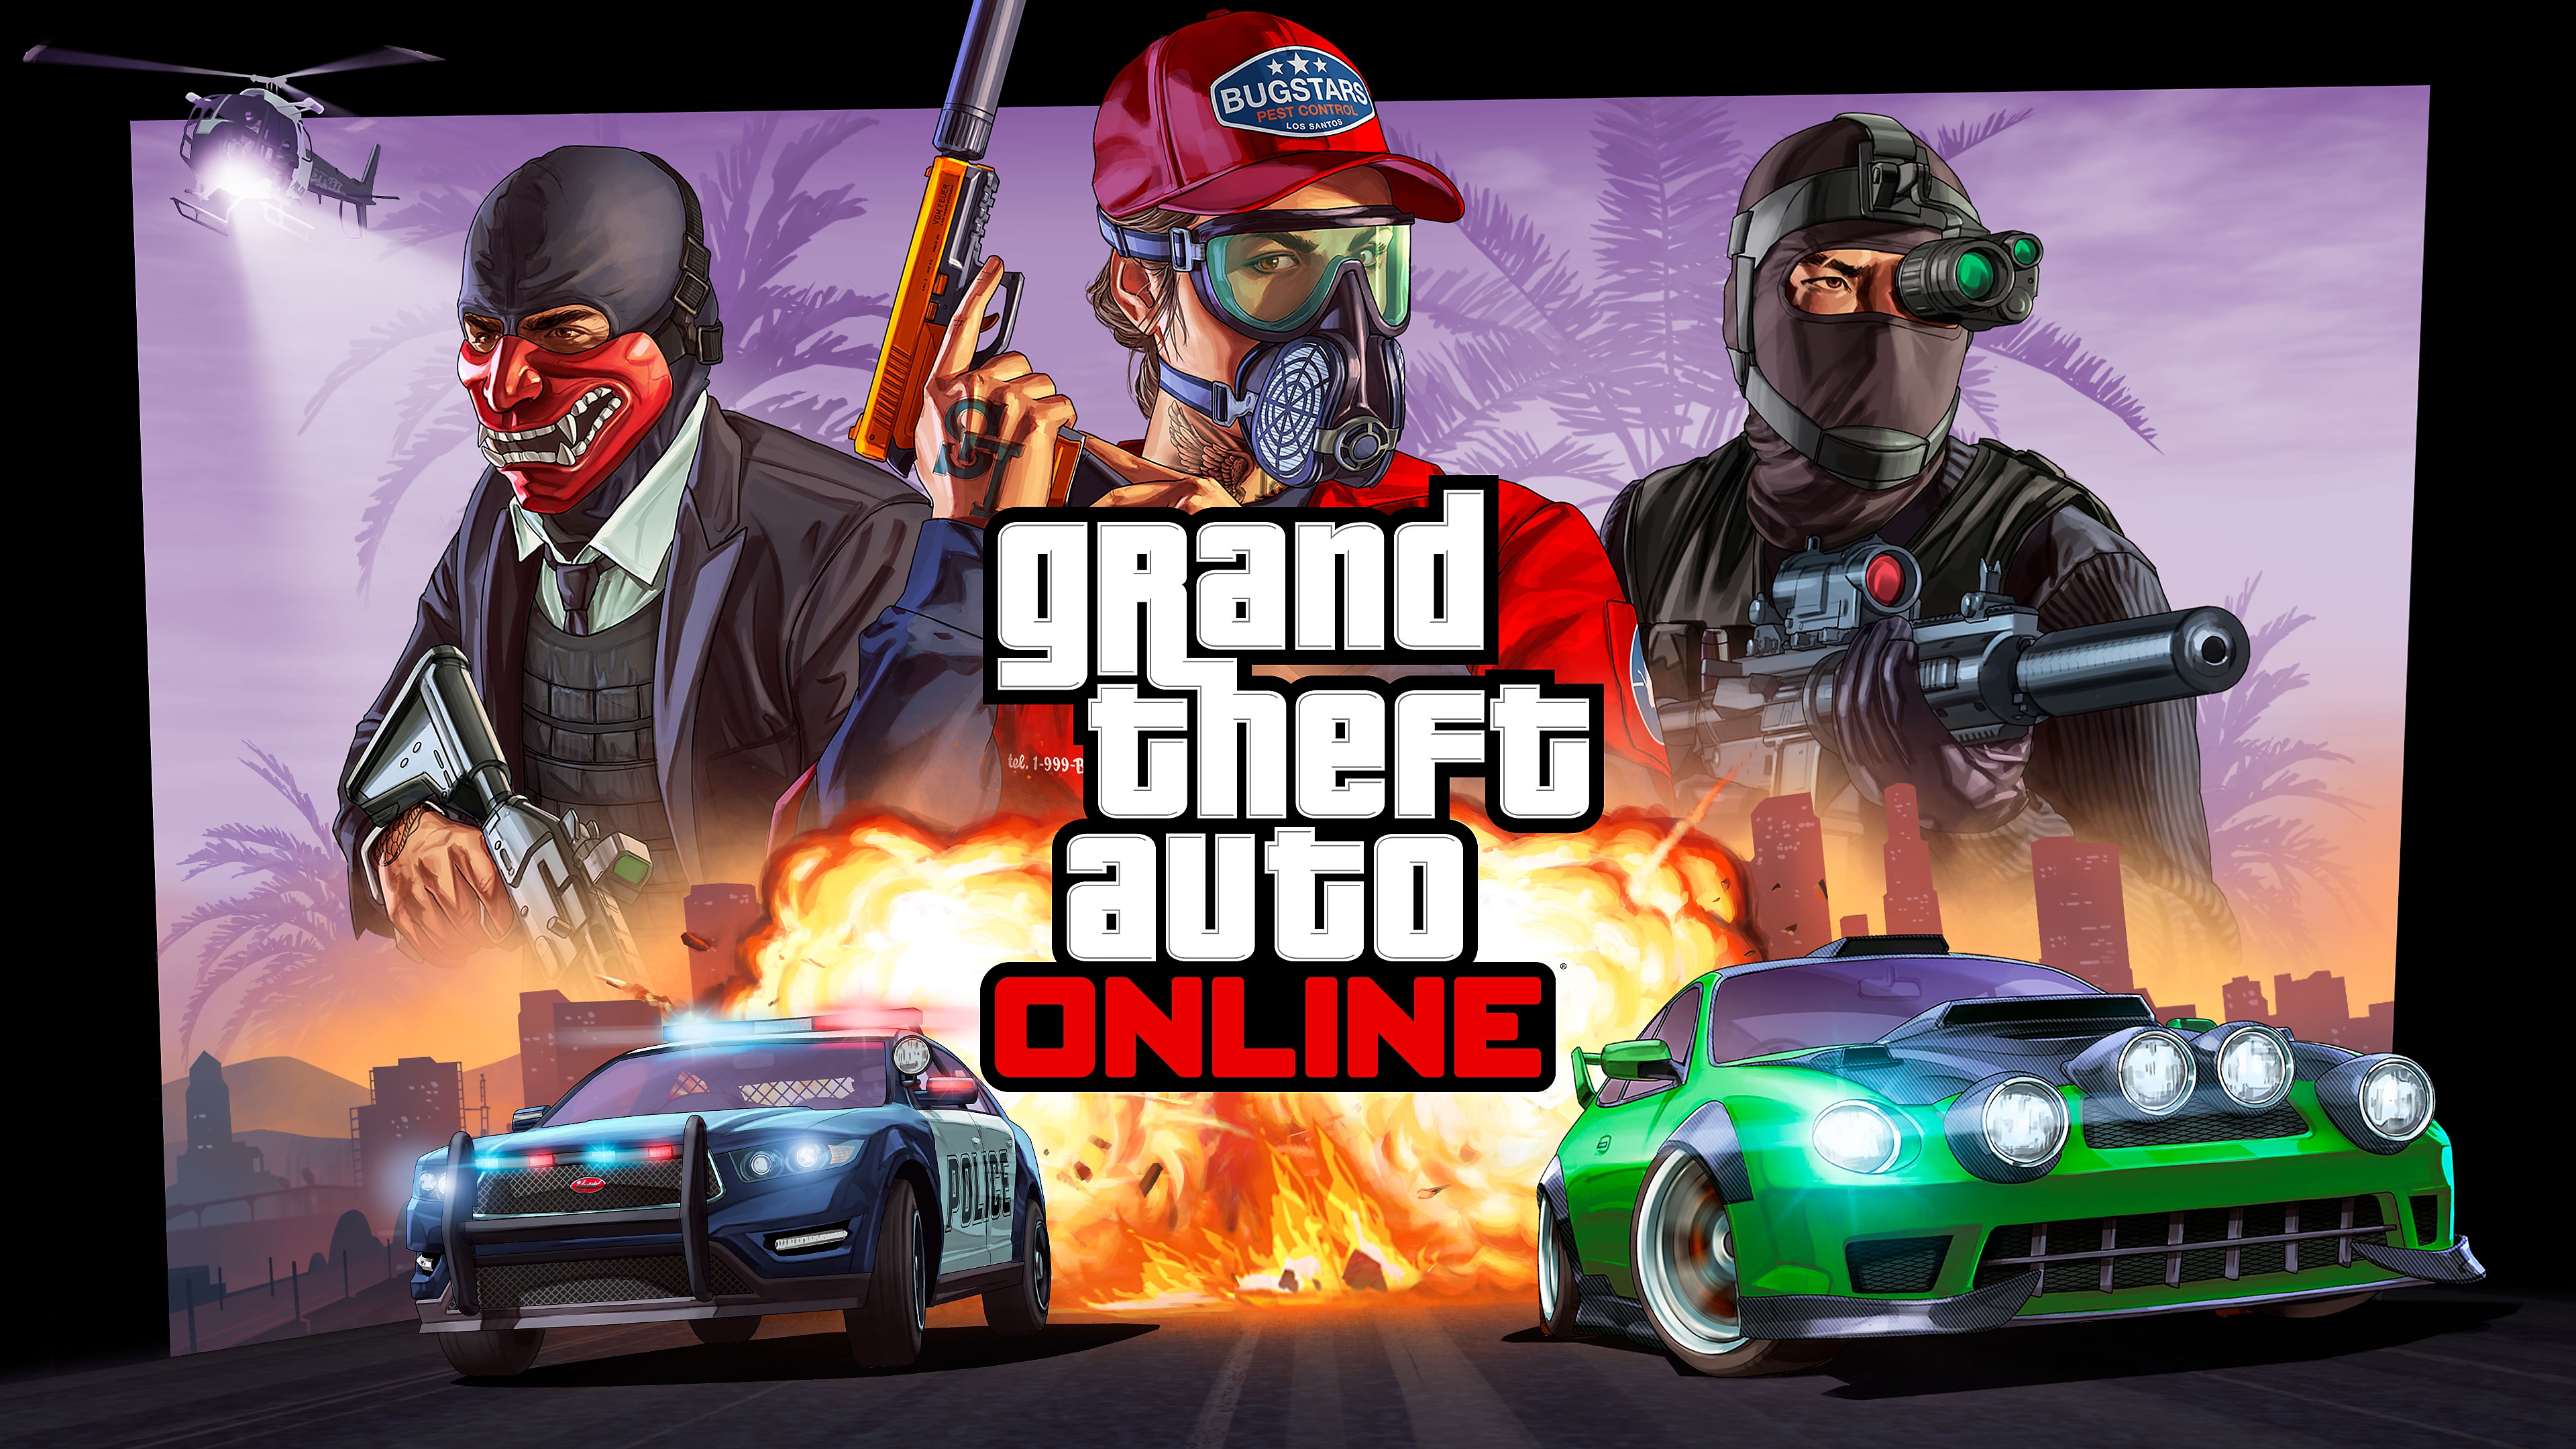 คีย์อาร์ต Grand Theft Auto Online แสดงให้เห็นรถแข่งข้างถนนไล่ตามโดยรถตำรวจและมีตัวละครสามตัวอยู่ด้านบน